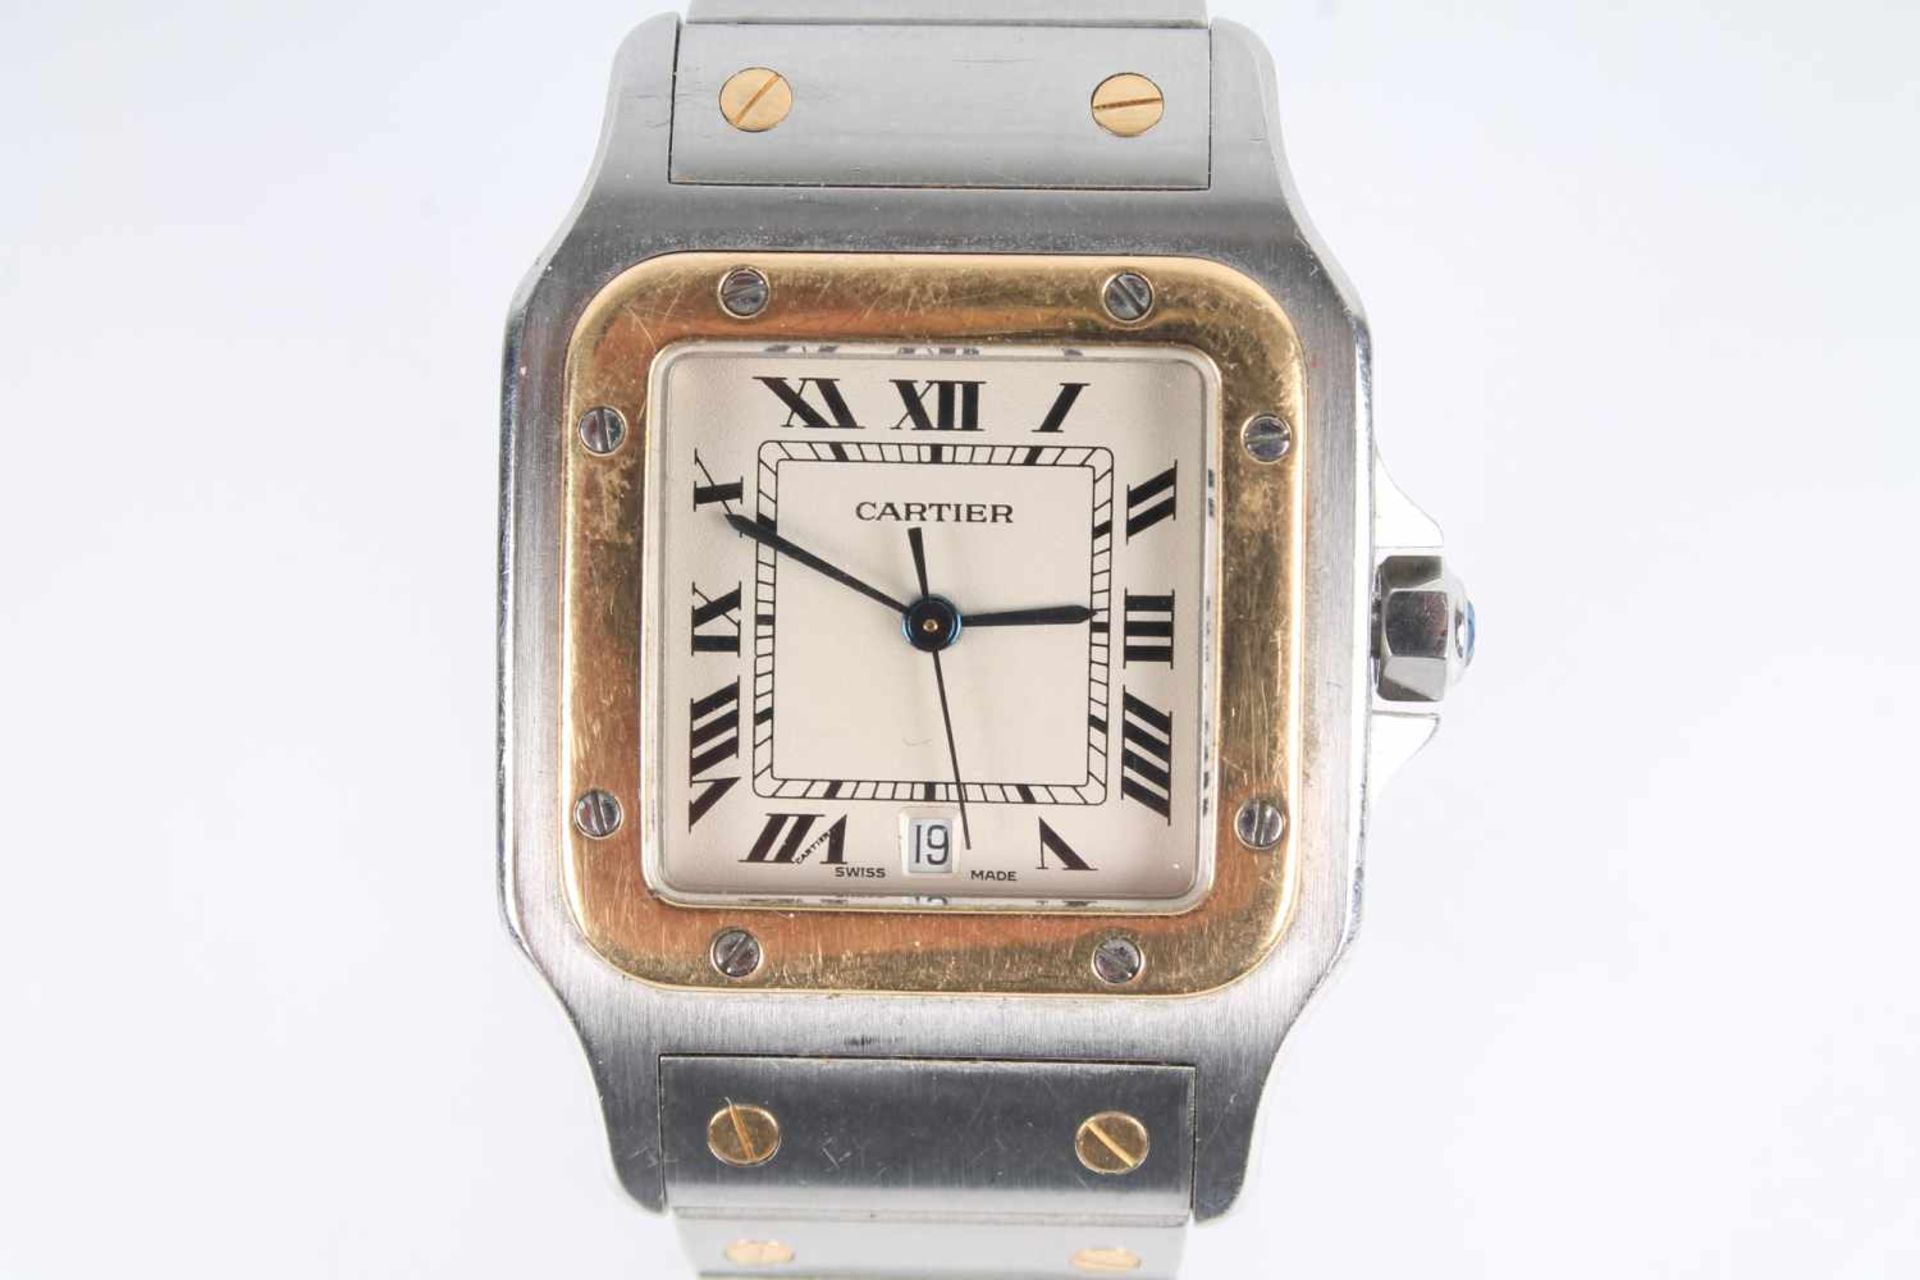 Cartier Santos Galbee Herrenuhr Armbanduhr Stahl/Gold 750, men's watch steel / 18K gold, - Bild 2 aus 7